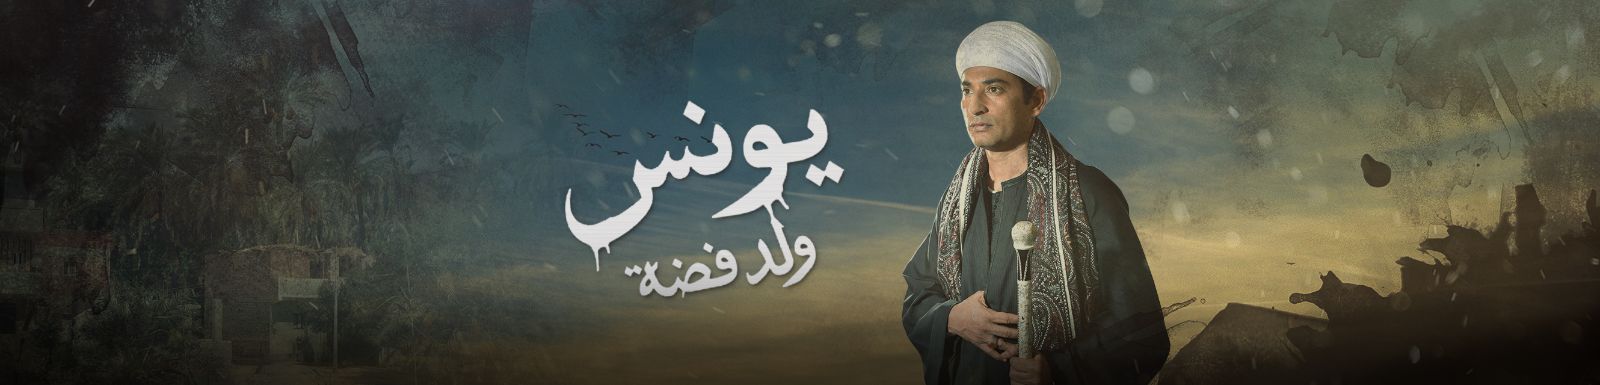 قصة وأحداث مسلسل يونس ولد فضة رمضان 2016 على قناة mbc